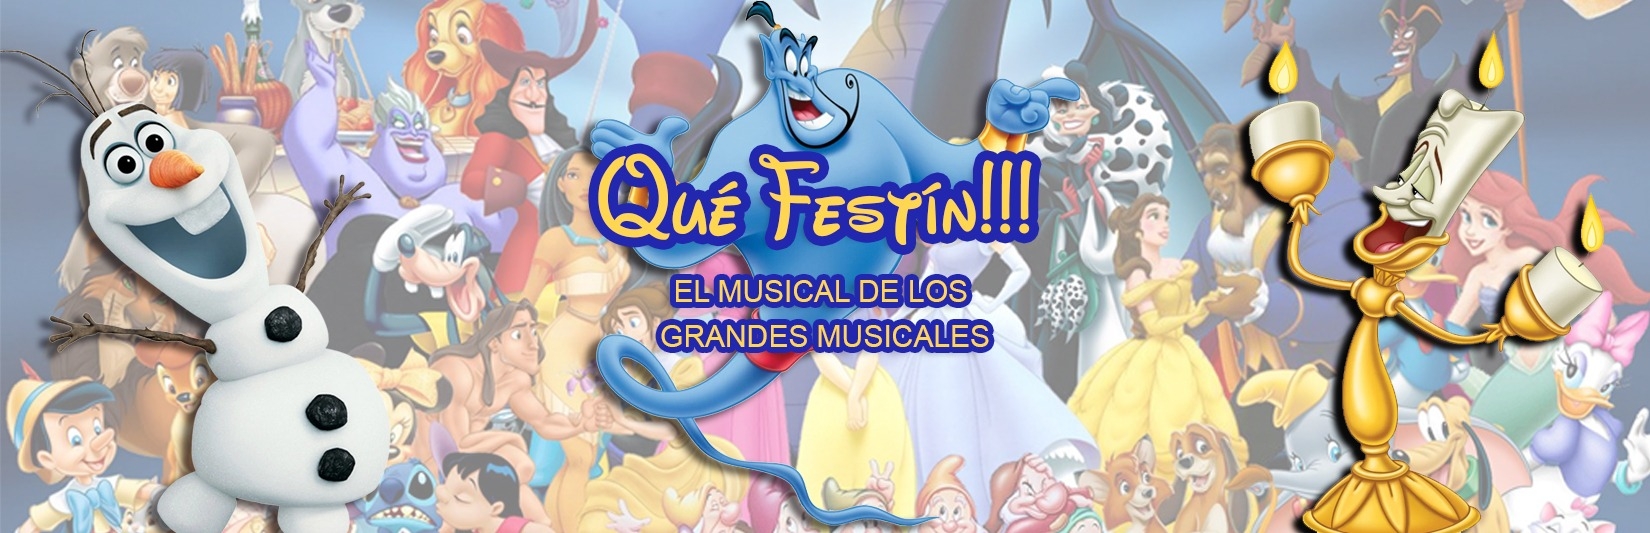 Imagen de Qué Festín!!, el musical de los grandes musicales